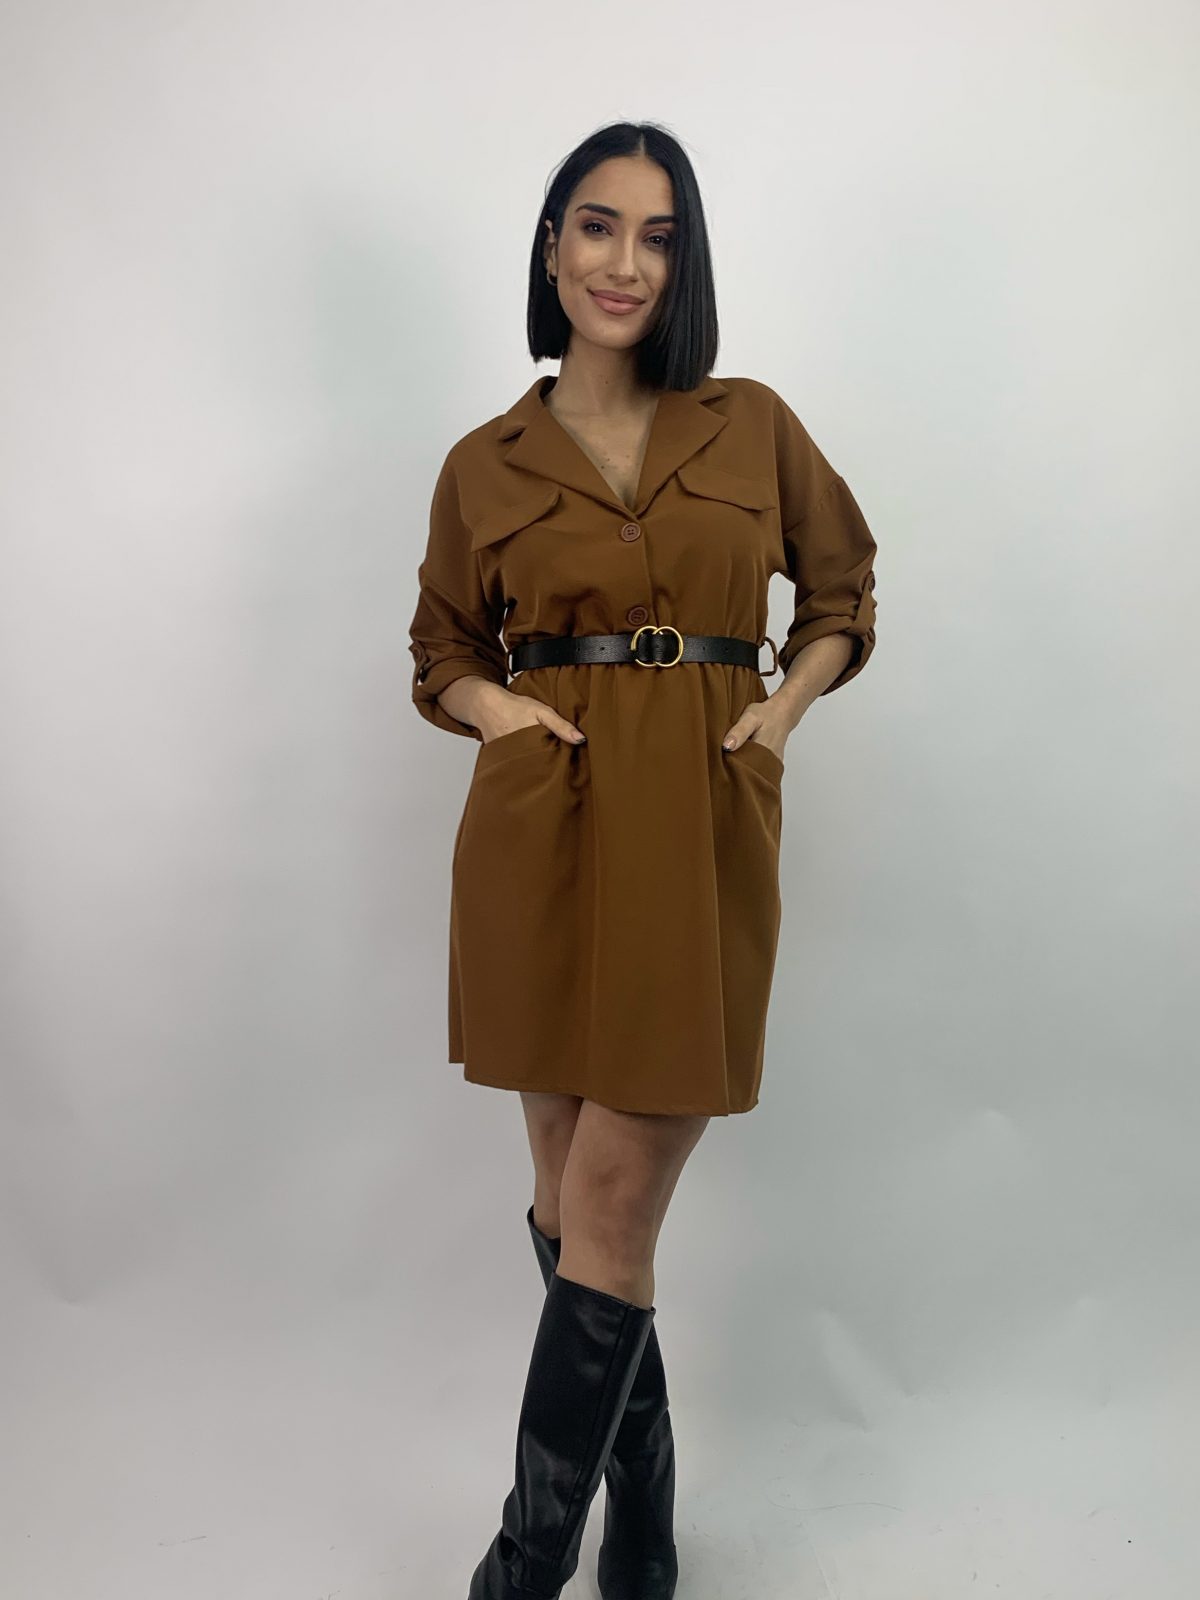 Short brown dress